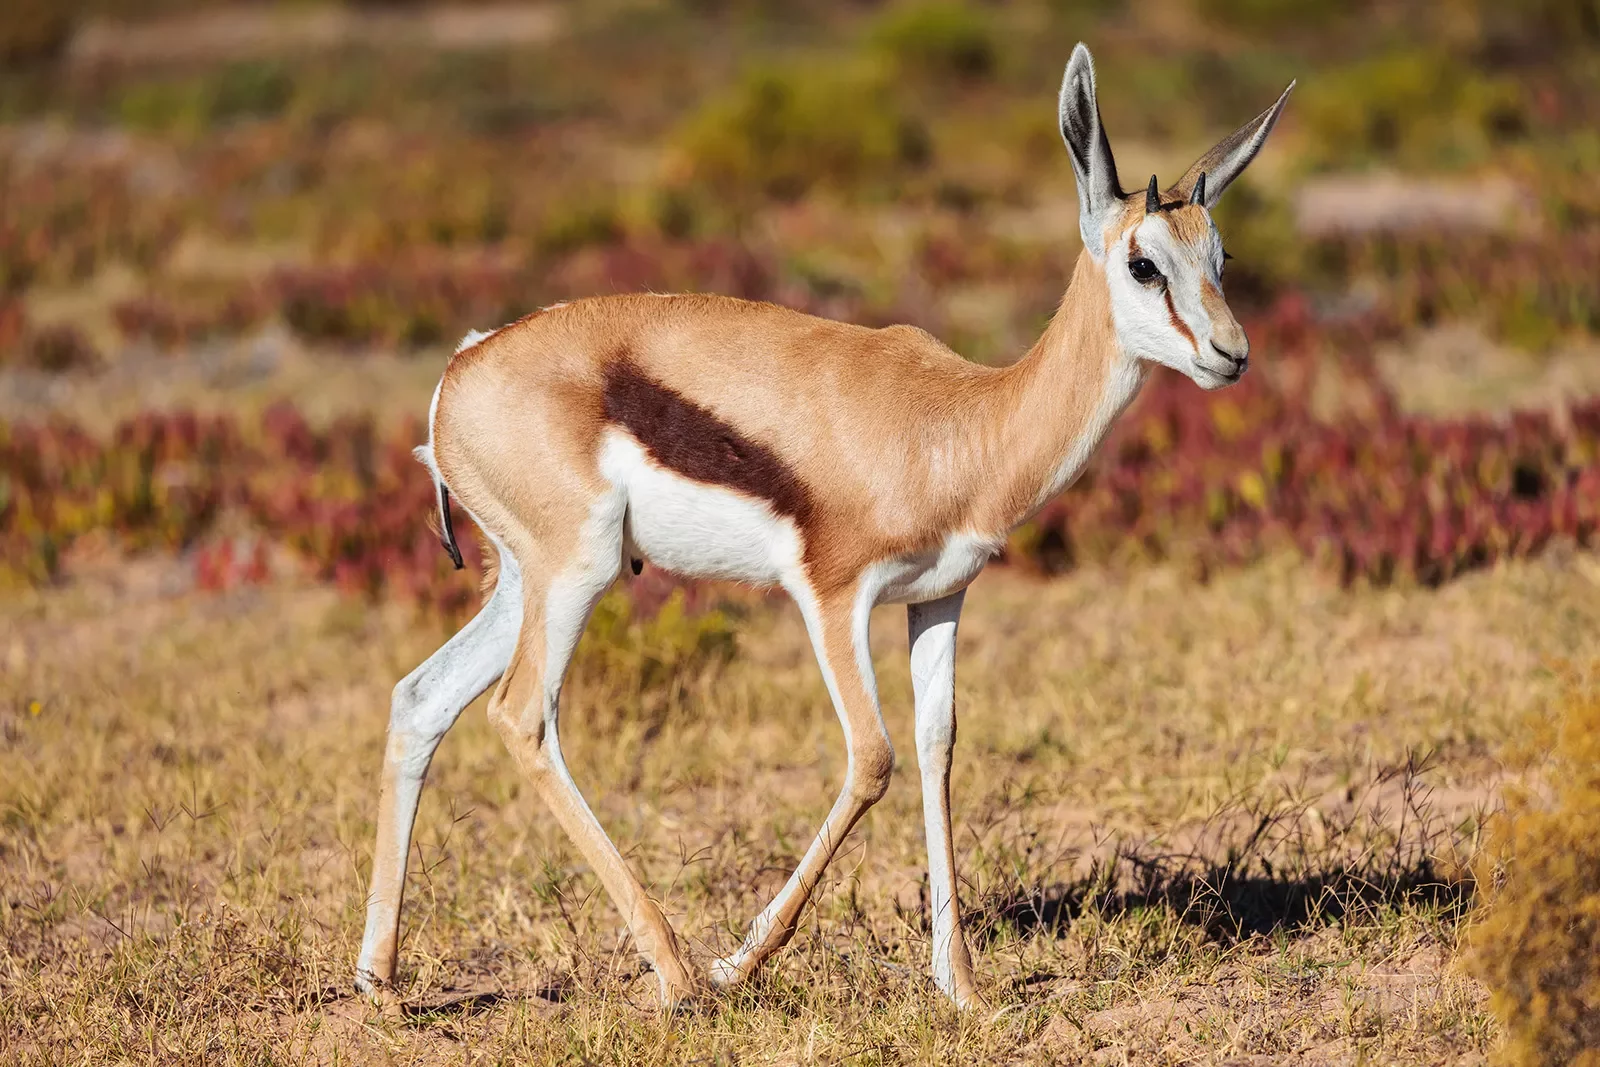 An antelope walks through a field